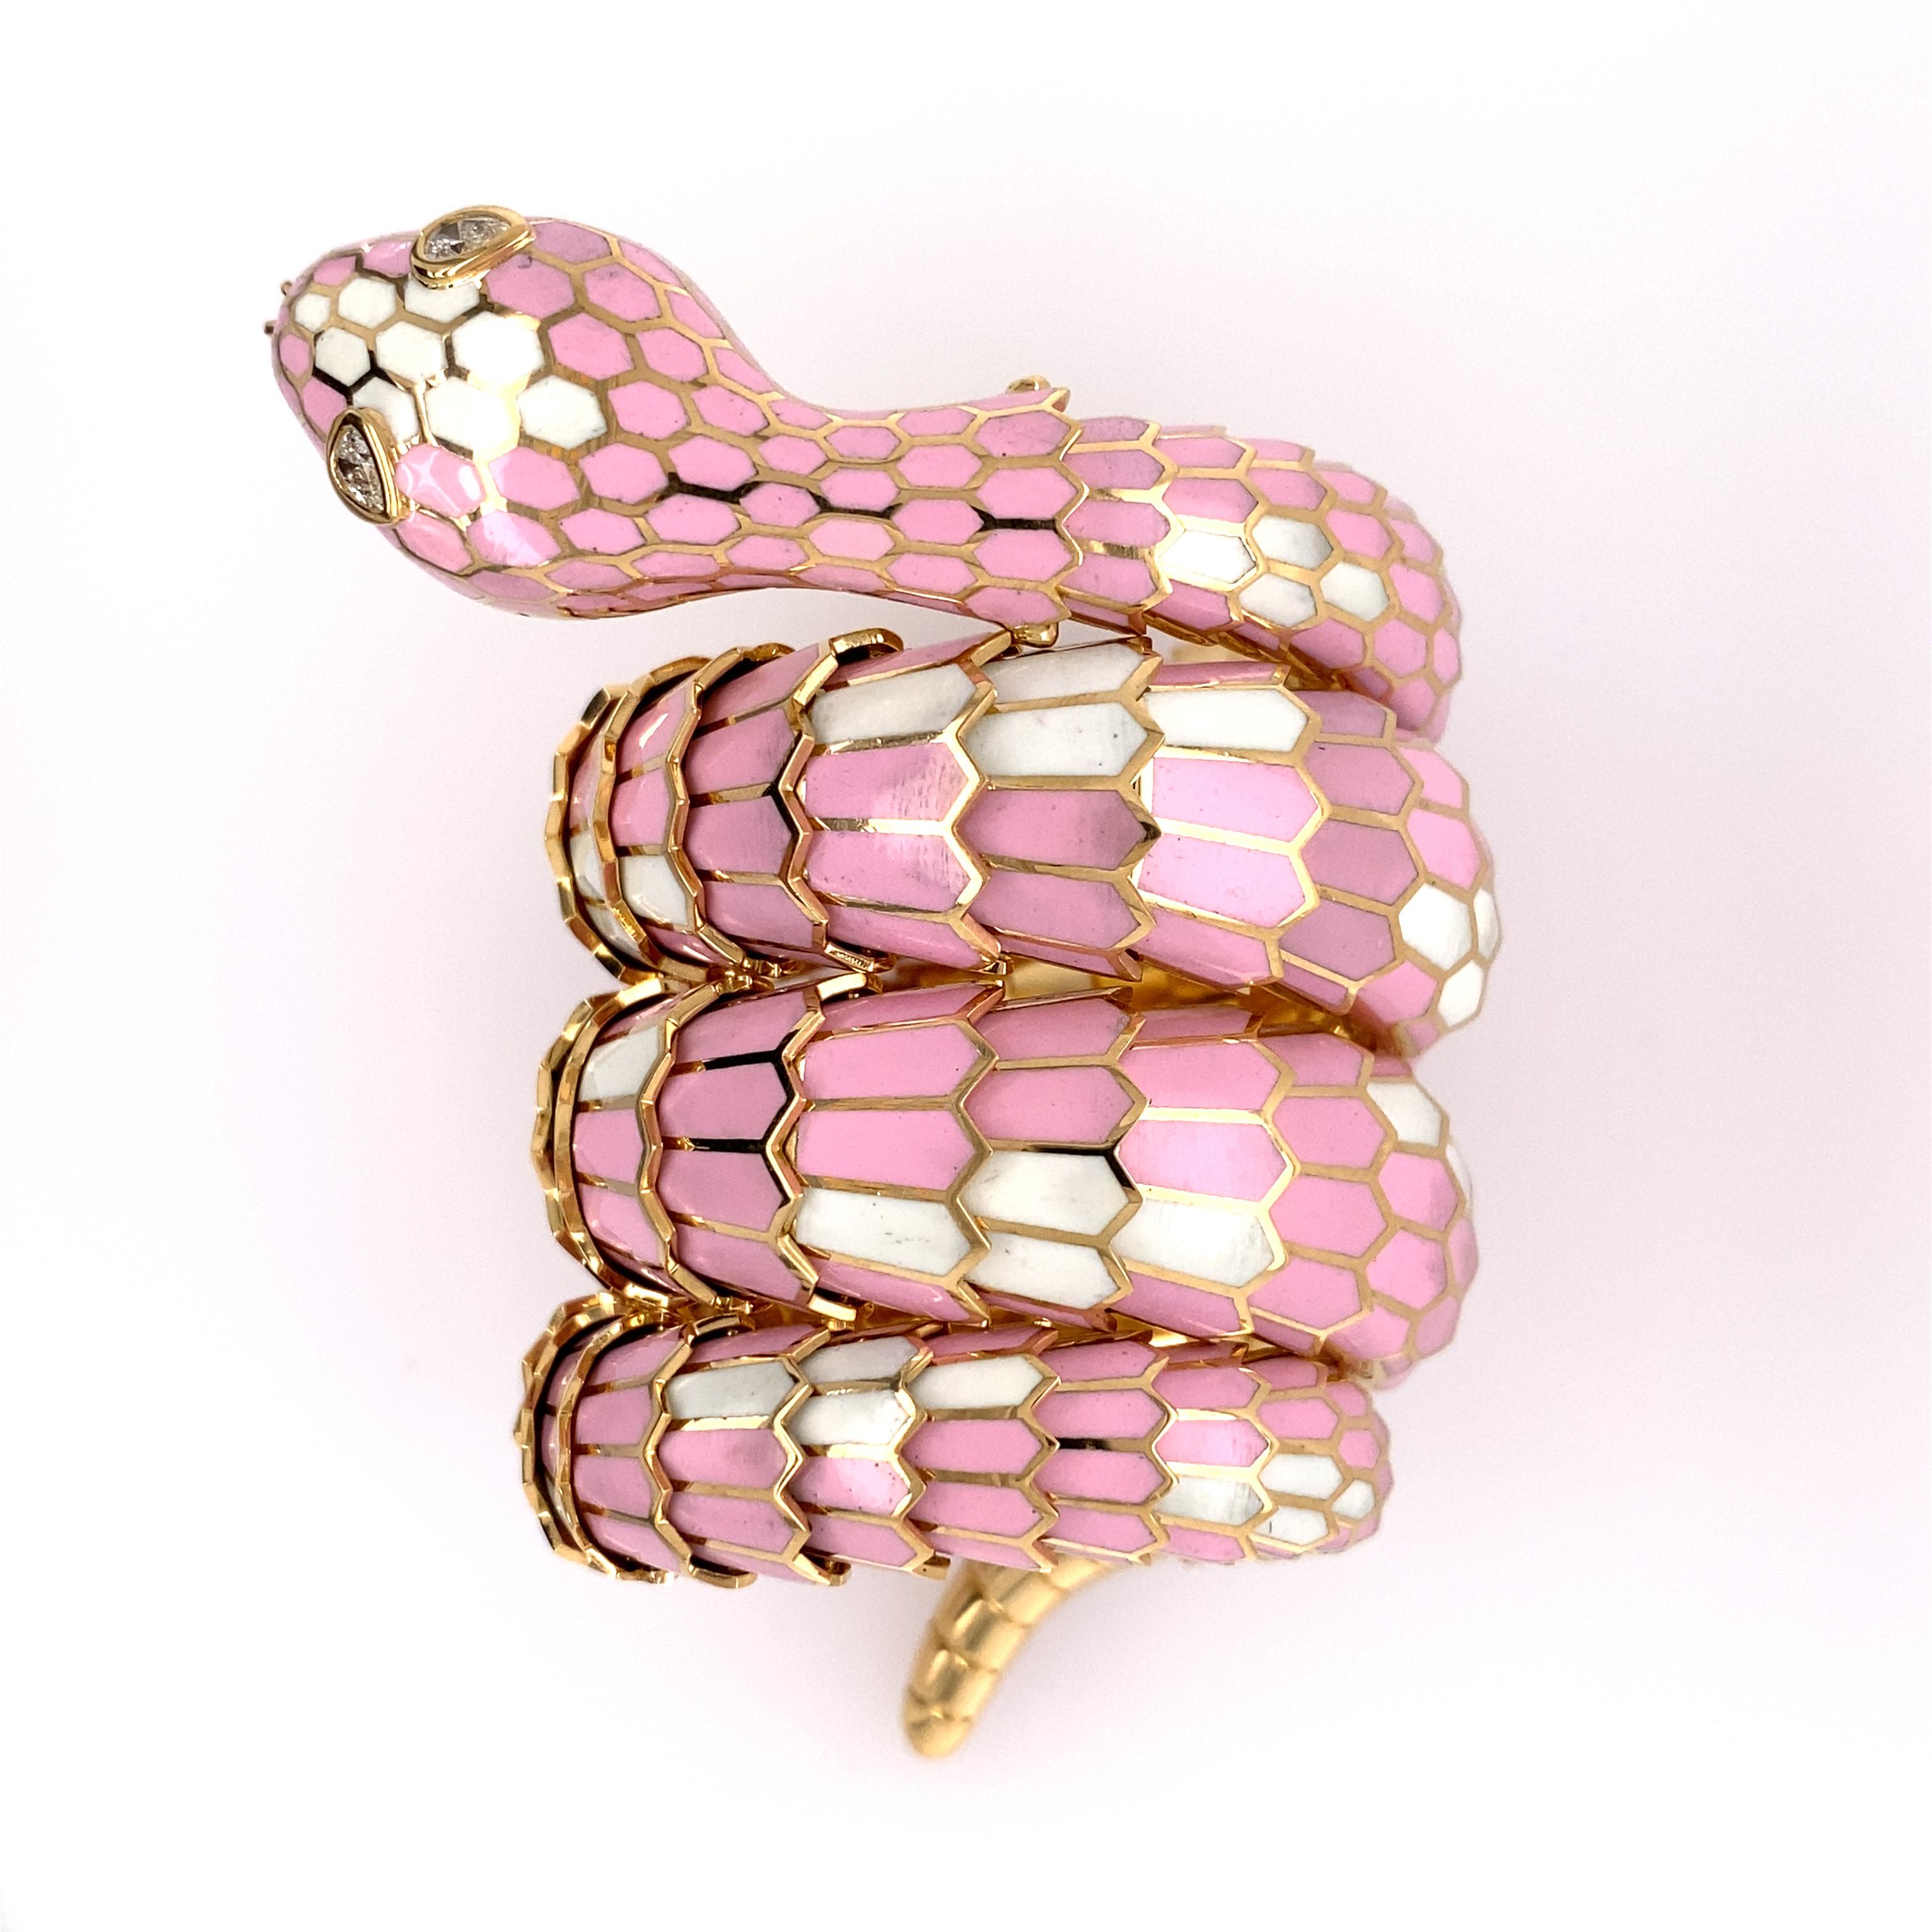 Women's 18k Gold Serpentine Bracelet by Illario